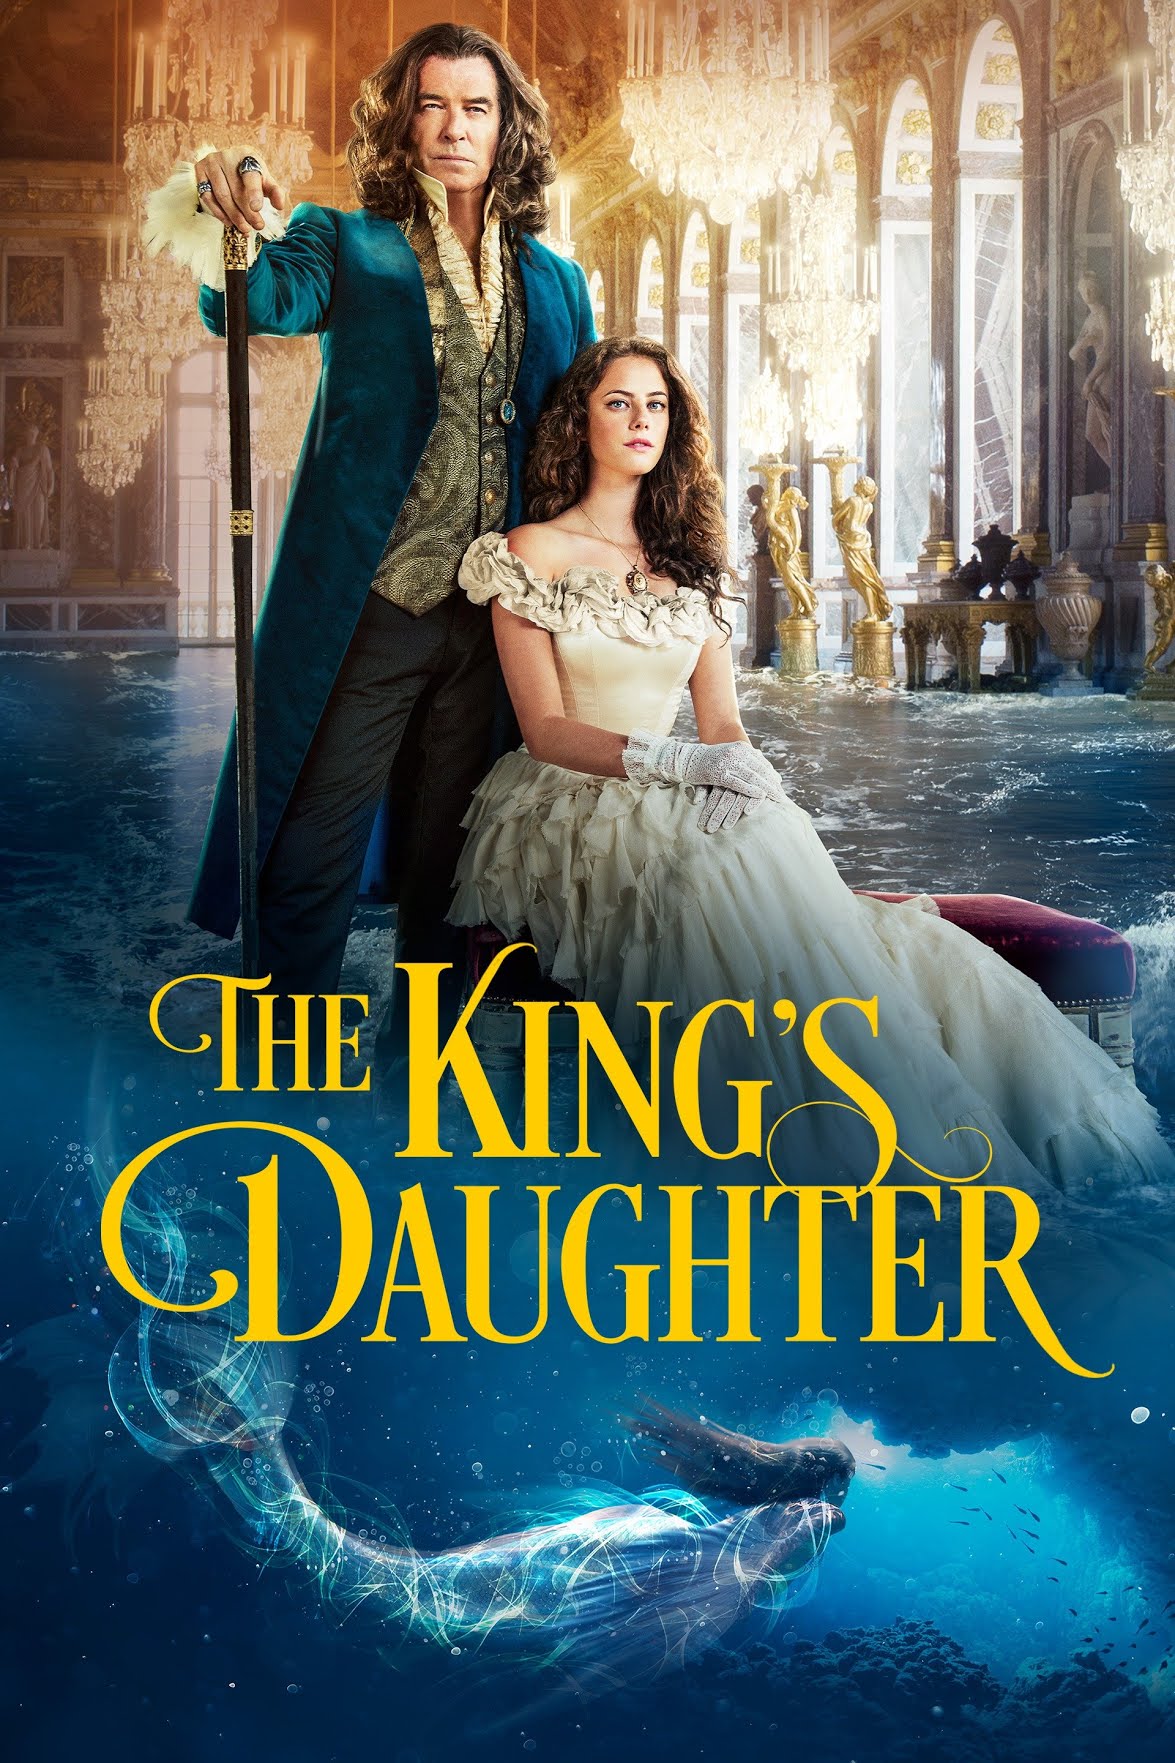 [ฝรั่ง] The King’s Daughter (2022) เดอะ คิง ดอฮ์เทอร์ [1080p] [AMAZON] [พากย์อังกฤษ 5.1] [Soundtrack บรรยายไทย + อังกฤษ] [เสียงอังกฤษ + ซับไทย] [USERLOAD]